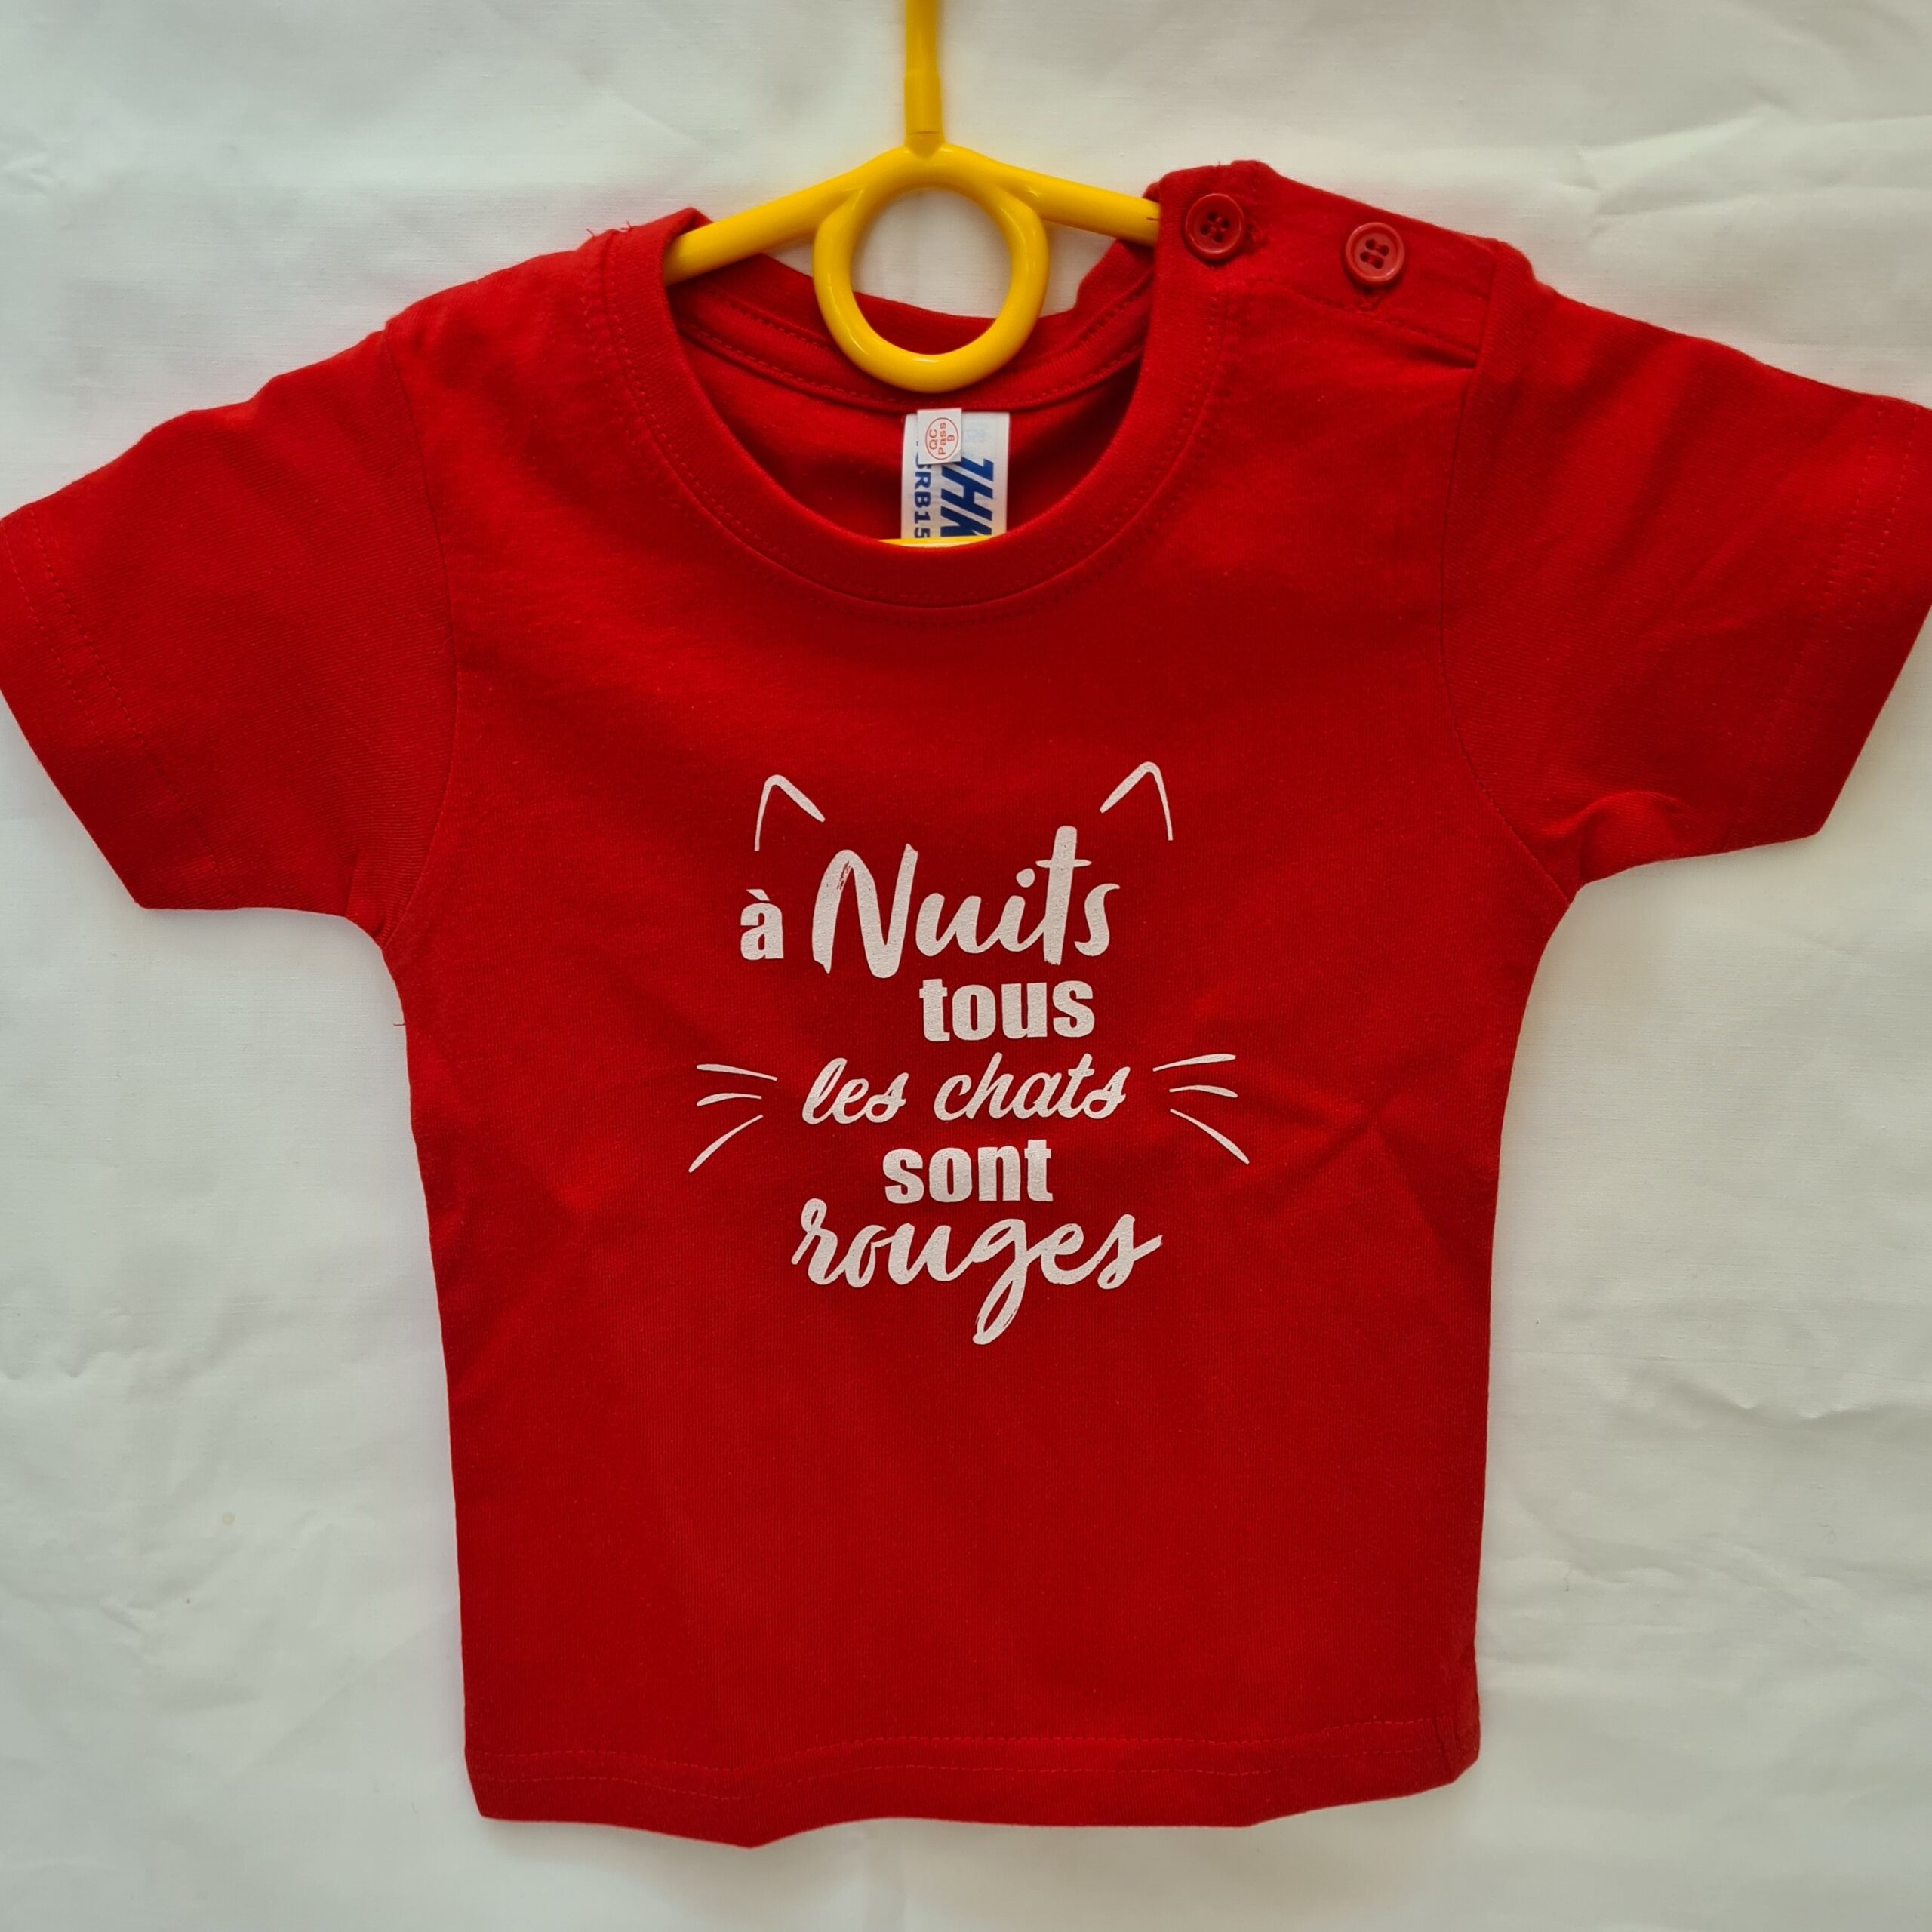 Tee-shirt enfant “A Nuits tous les chats sont rouges” rouge